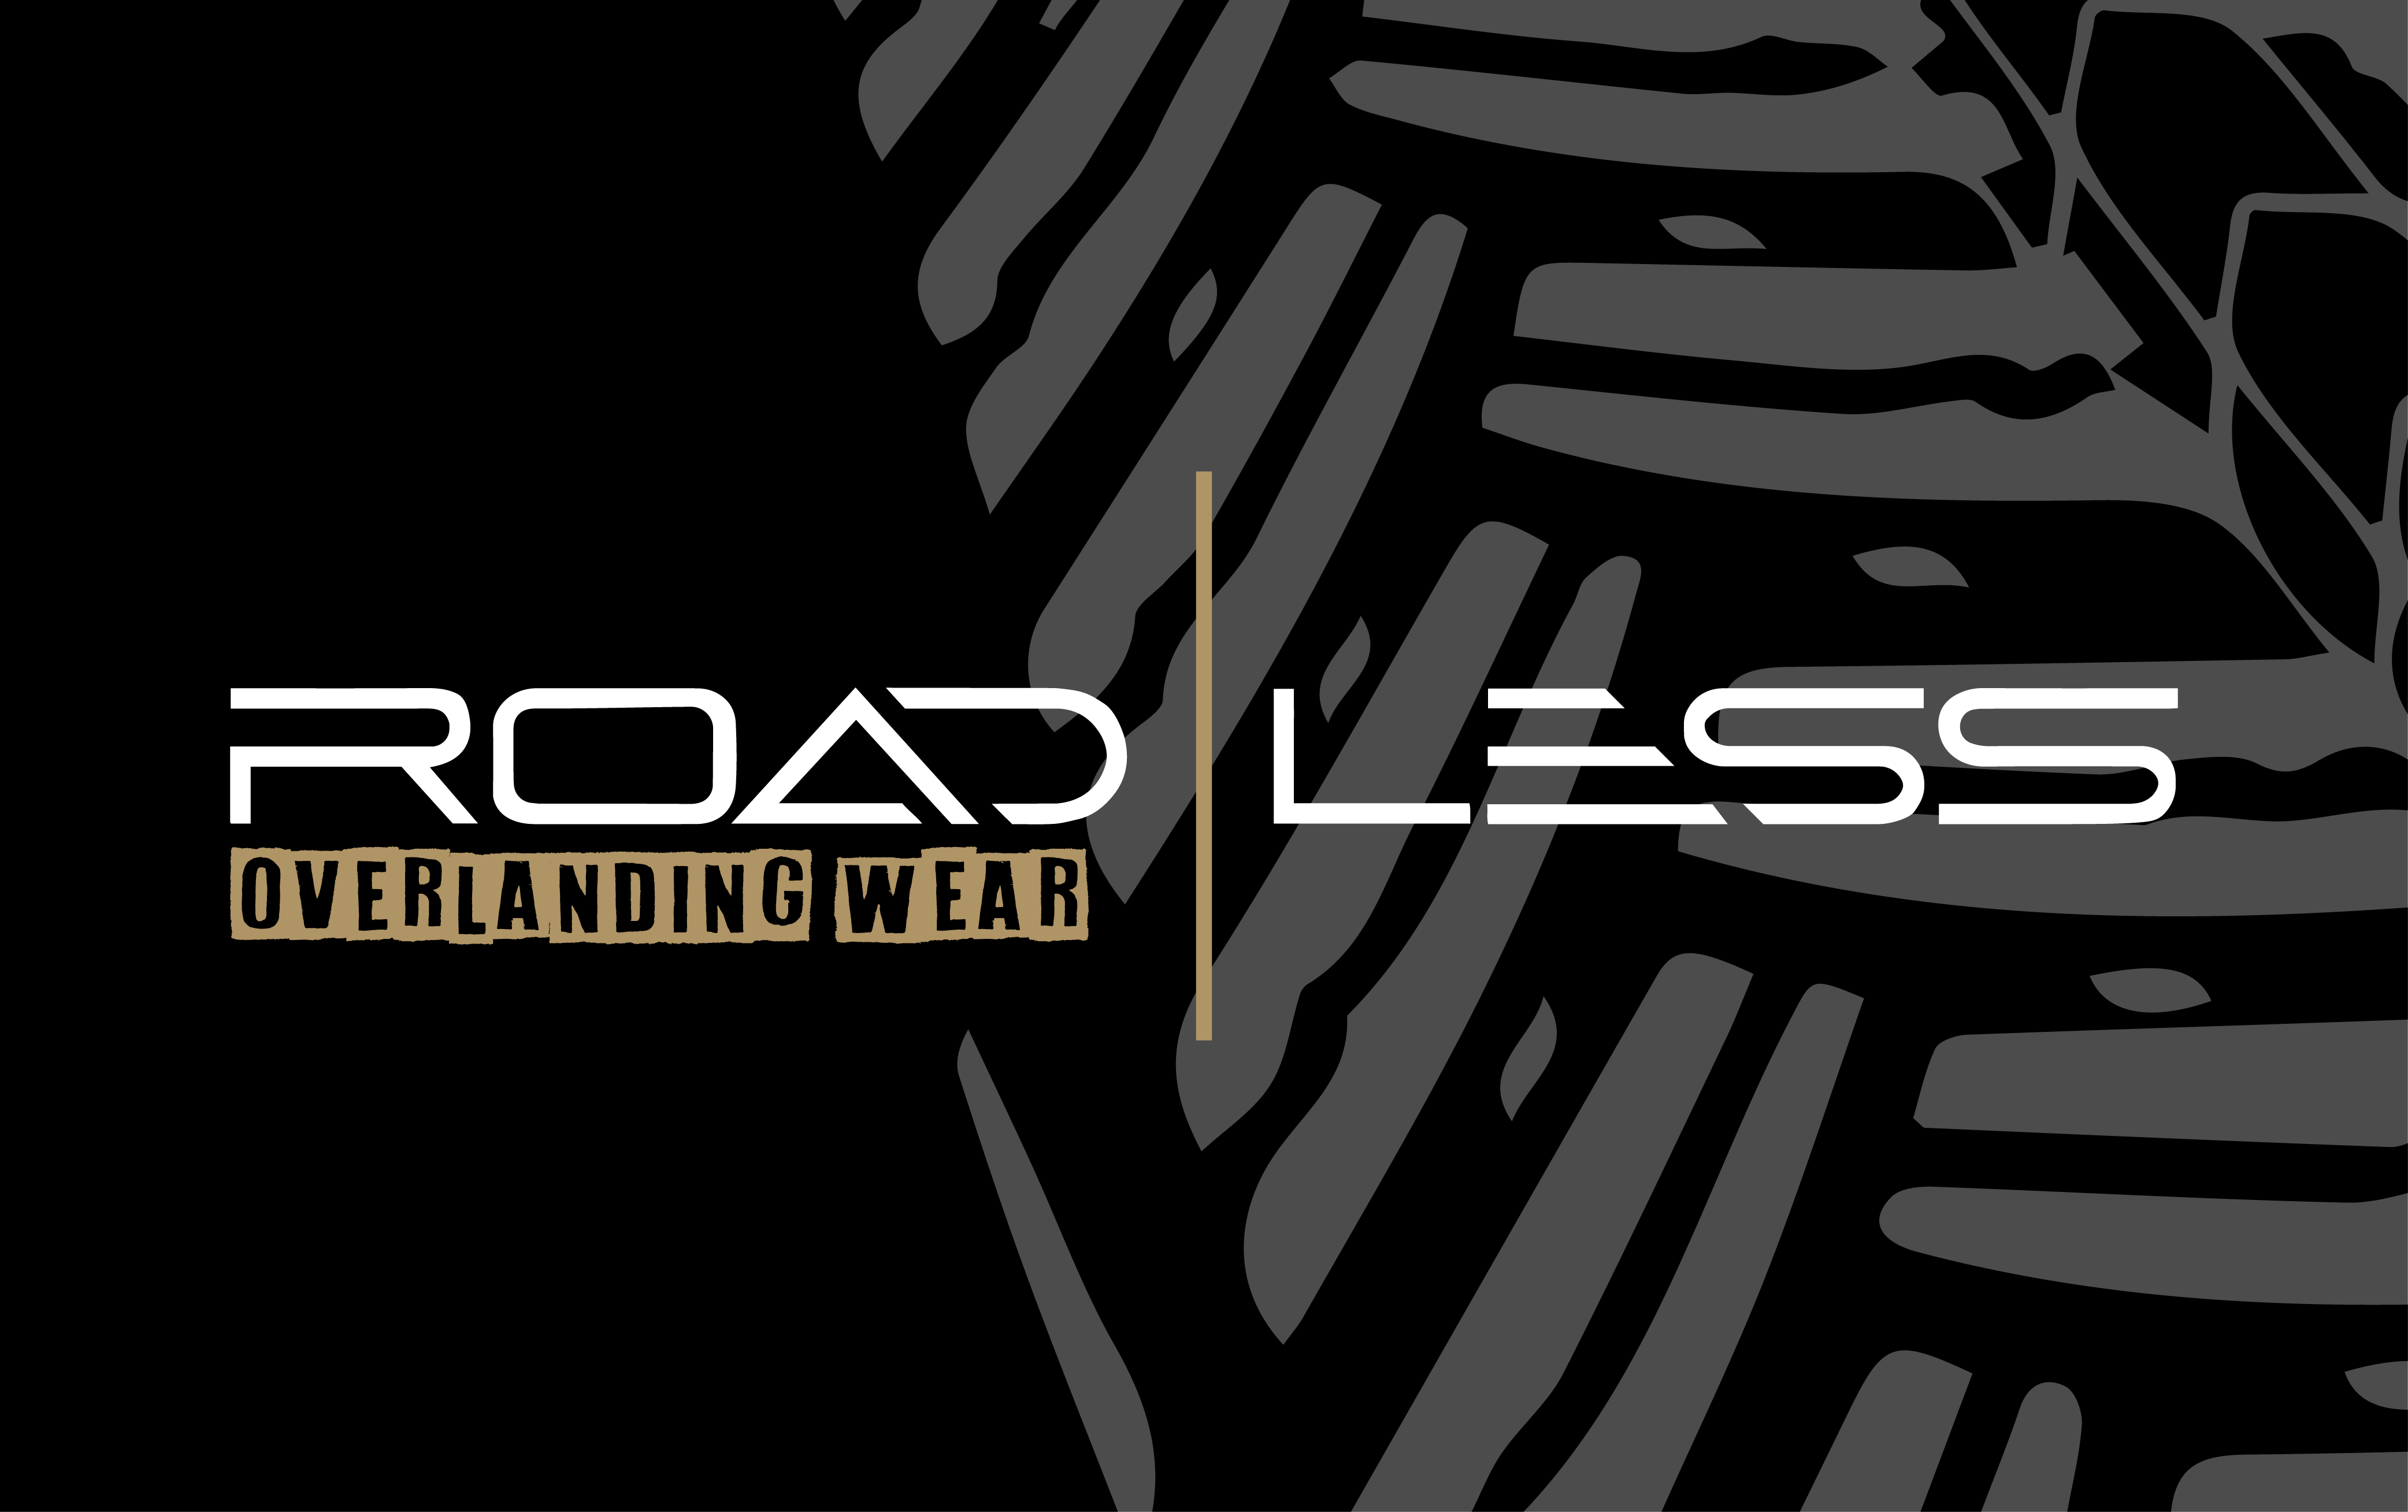 (c) Road-less.com